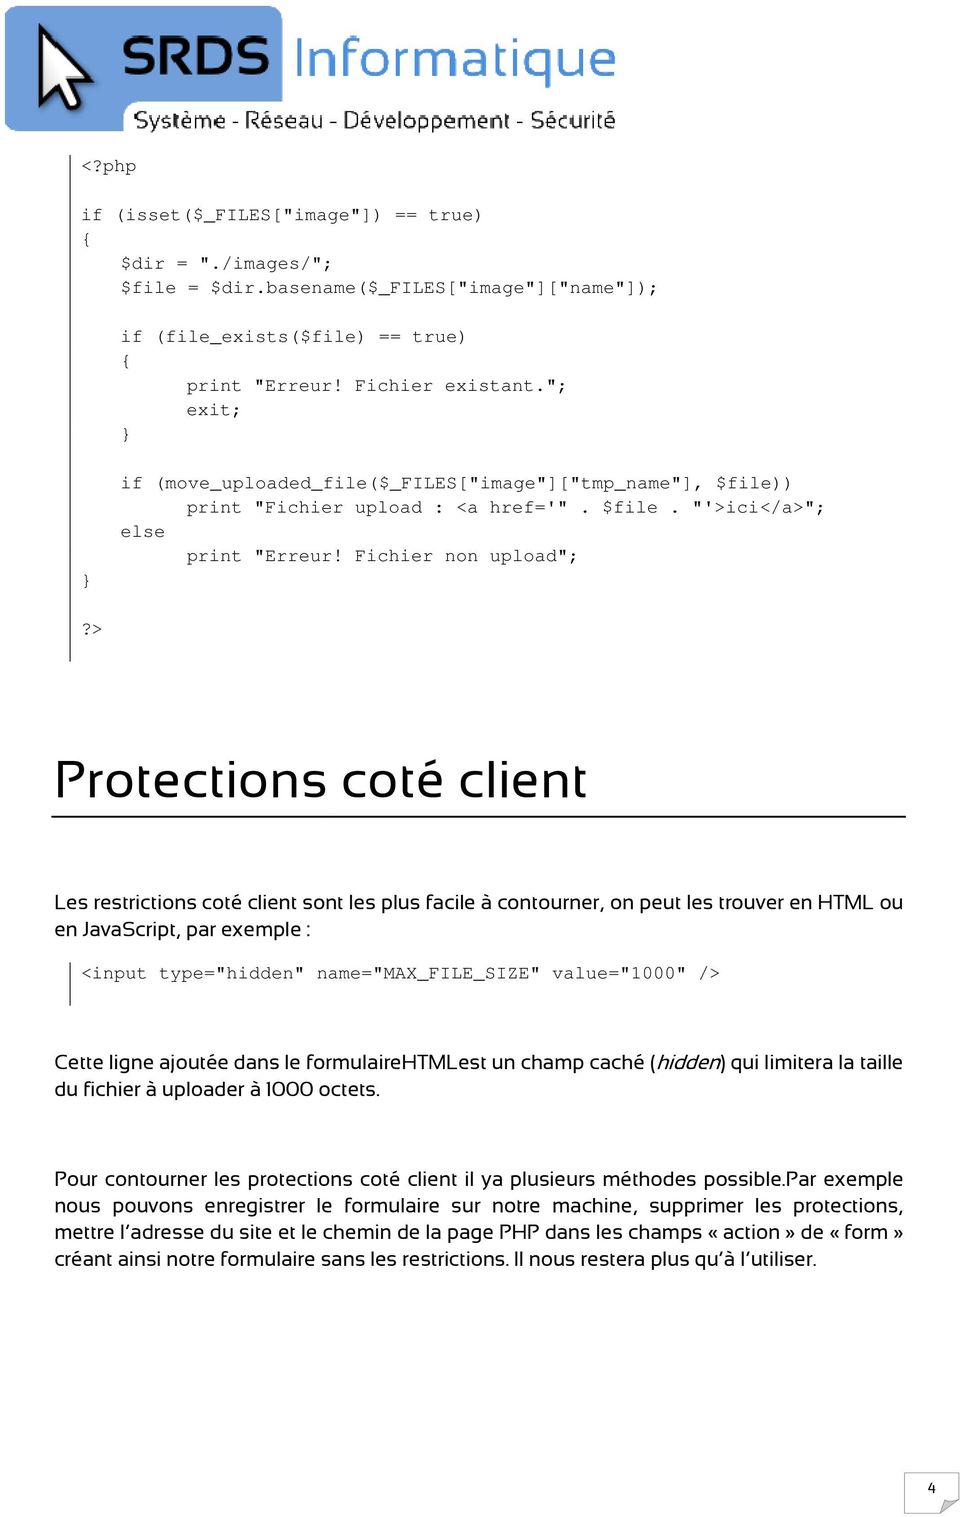 > Protections coté client Les restrictions coté client sont les plus facile à contourner, on peut les trouver en HTML ou en JavaScript, par exemple : <input type="hidden" name="max_file_size"